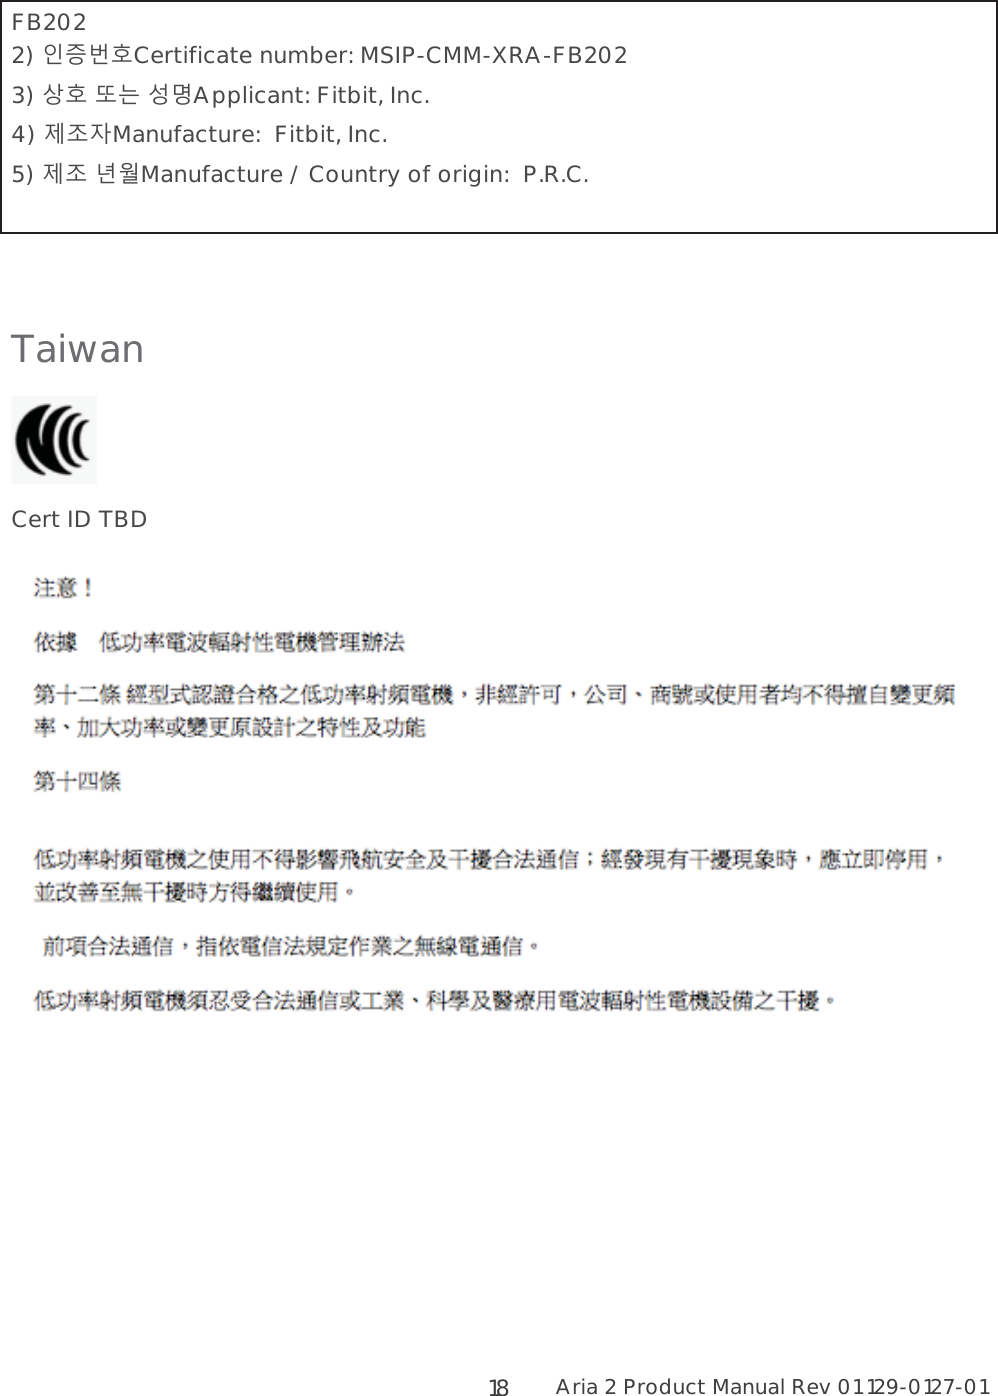 Aria 2 Product Manual Rev 01 129-0127-01  18 FB202 2) 2&lt;LCertificate number: MSIP-CMM-XRA-FB202 3) L  Applicant: Fitbit, Inc. 4) 895Manufacture:  Fitbit, Inc. 5) 89 -Manufacture / Country of origin:  P.R.C.   Taiwan  Cert ID TBD  